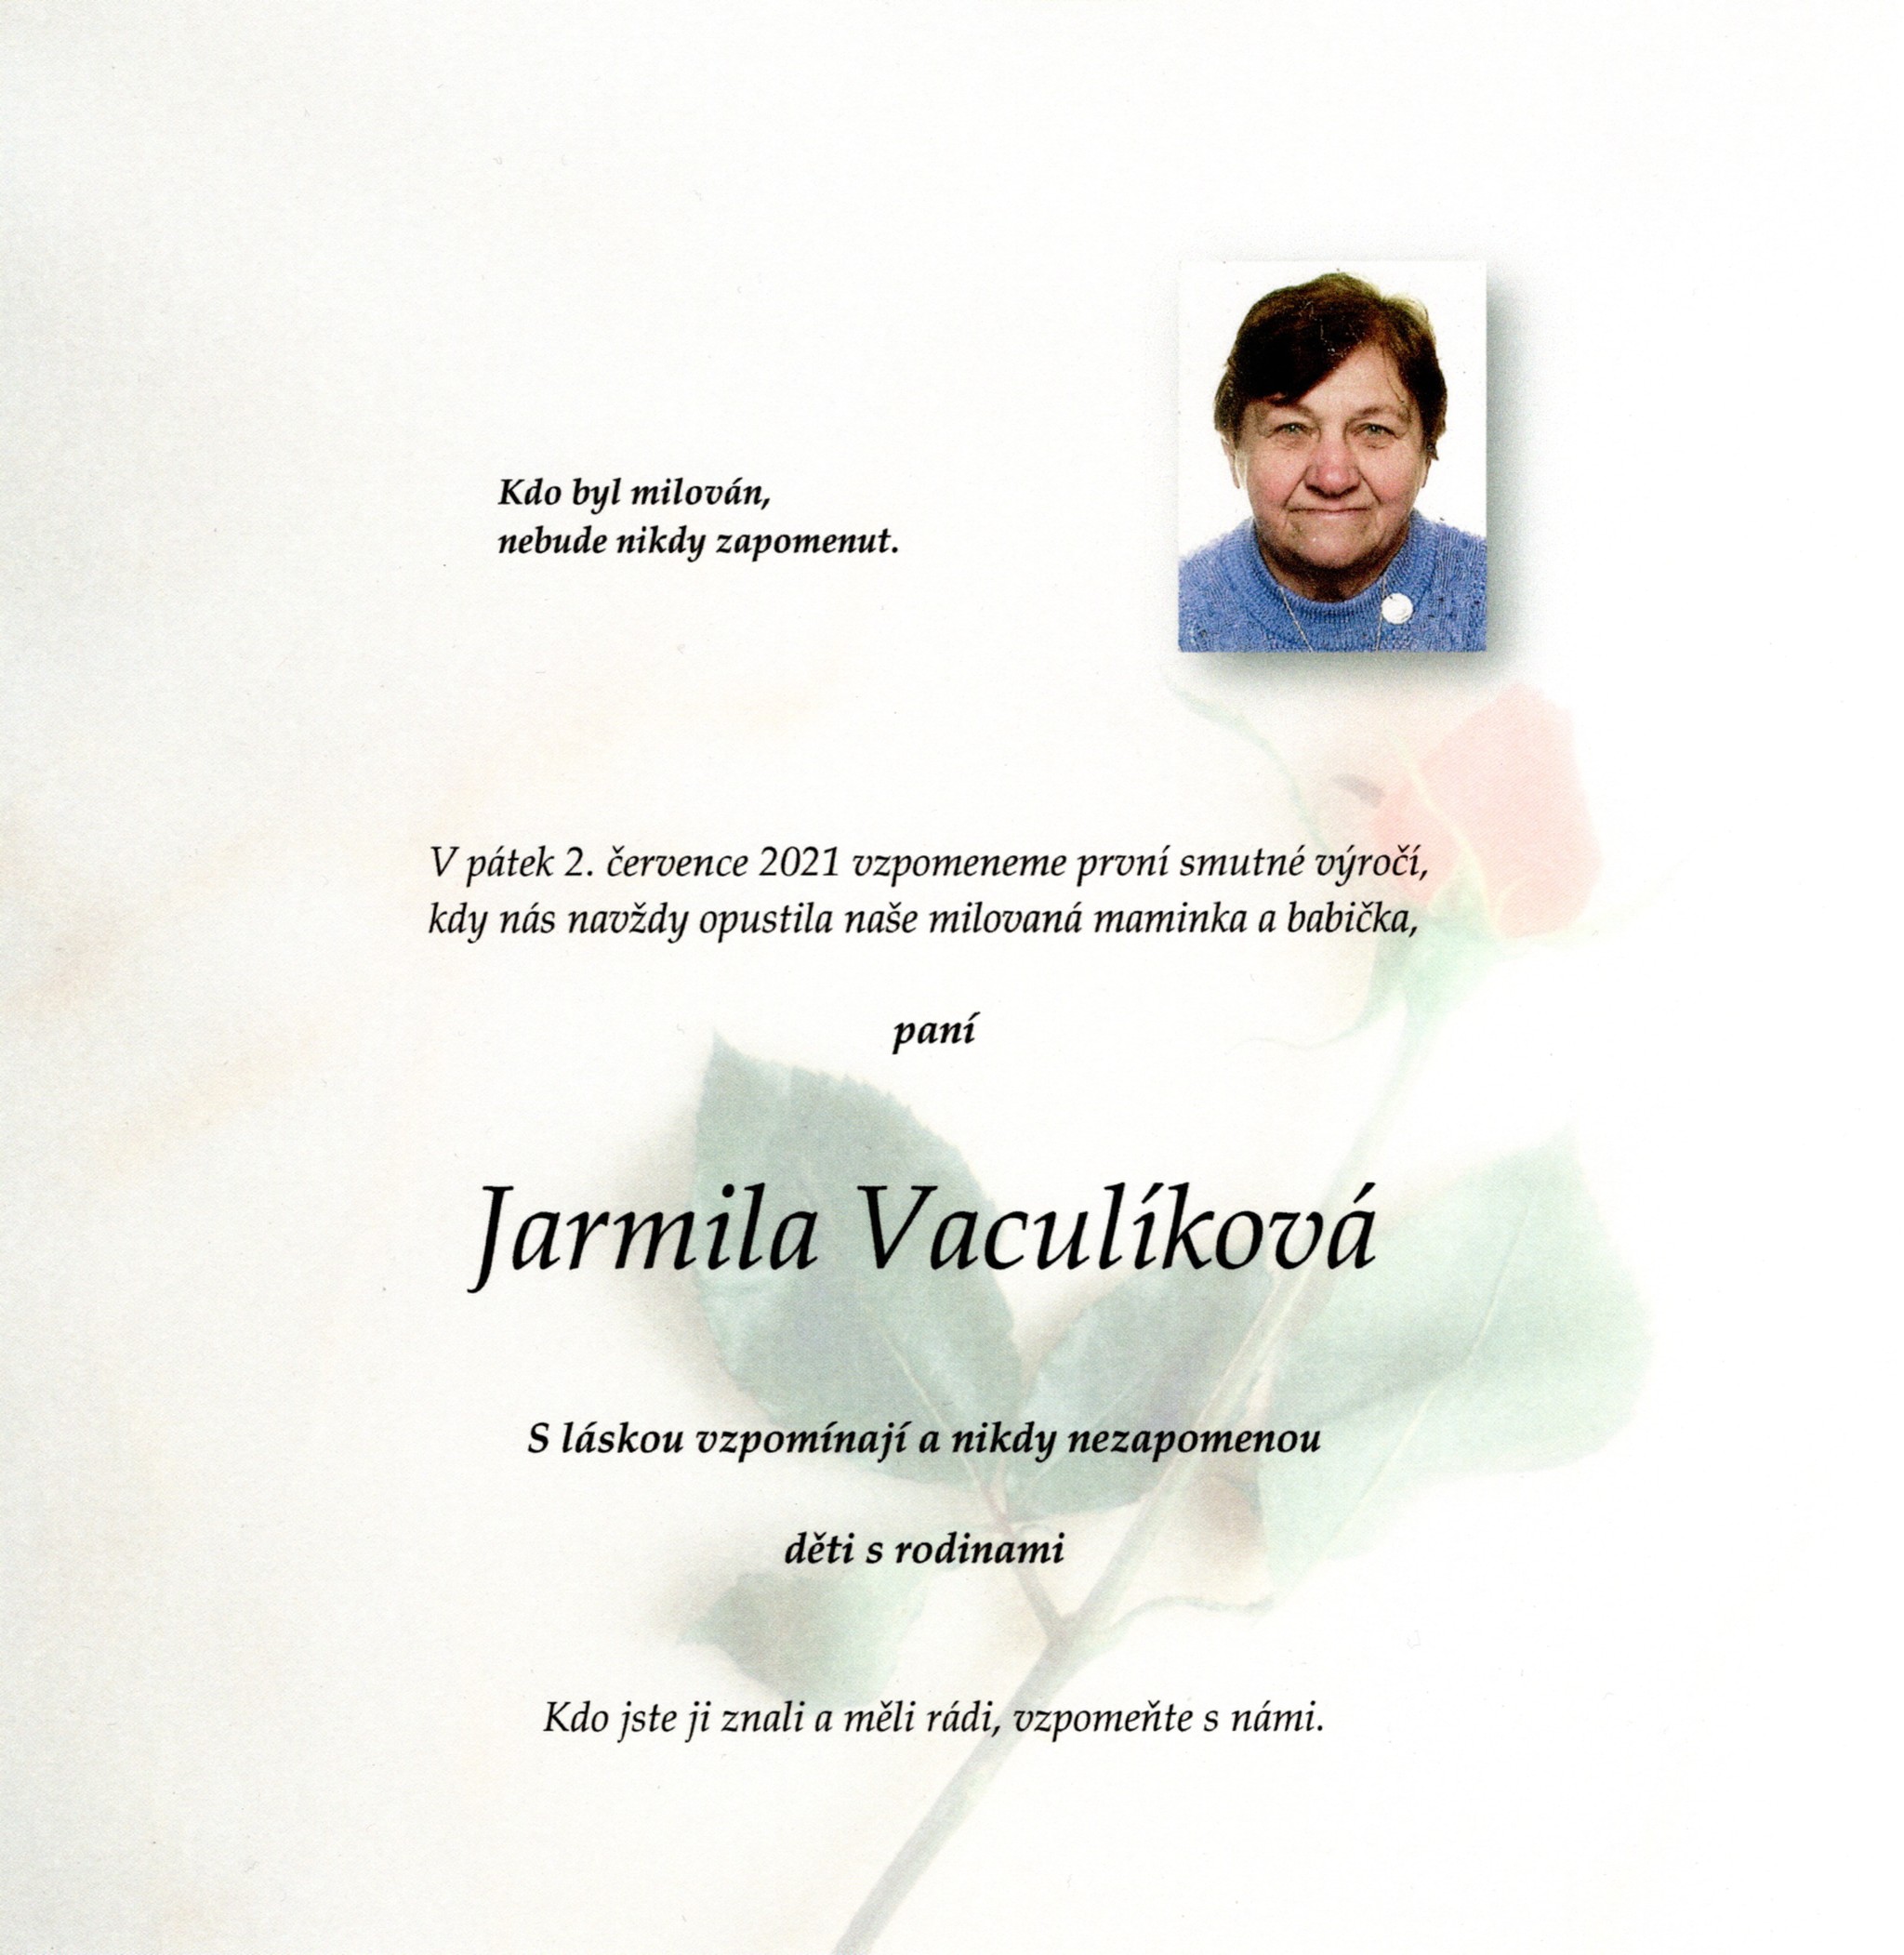 Jarmila Vaculíková